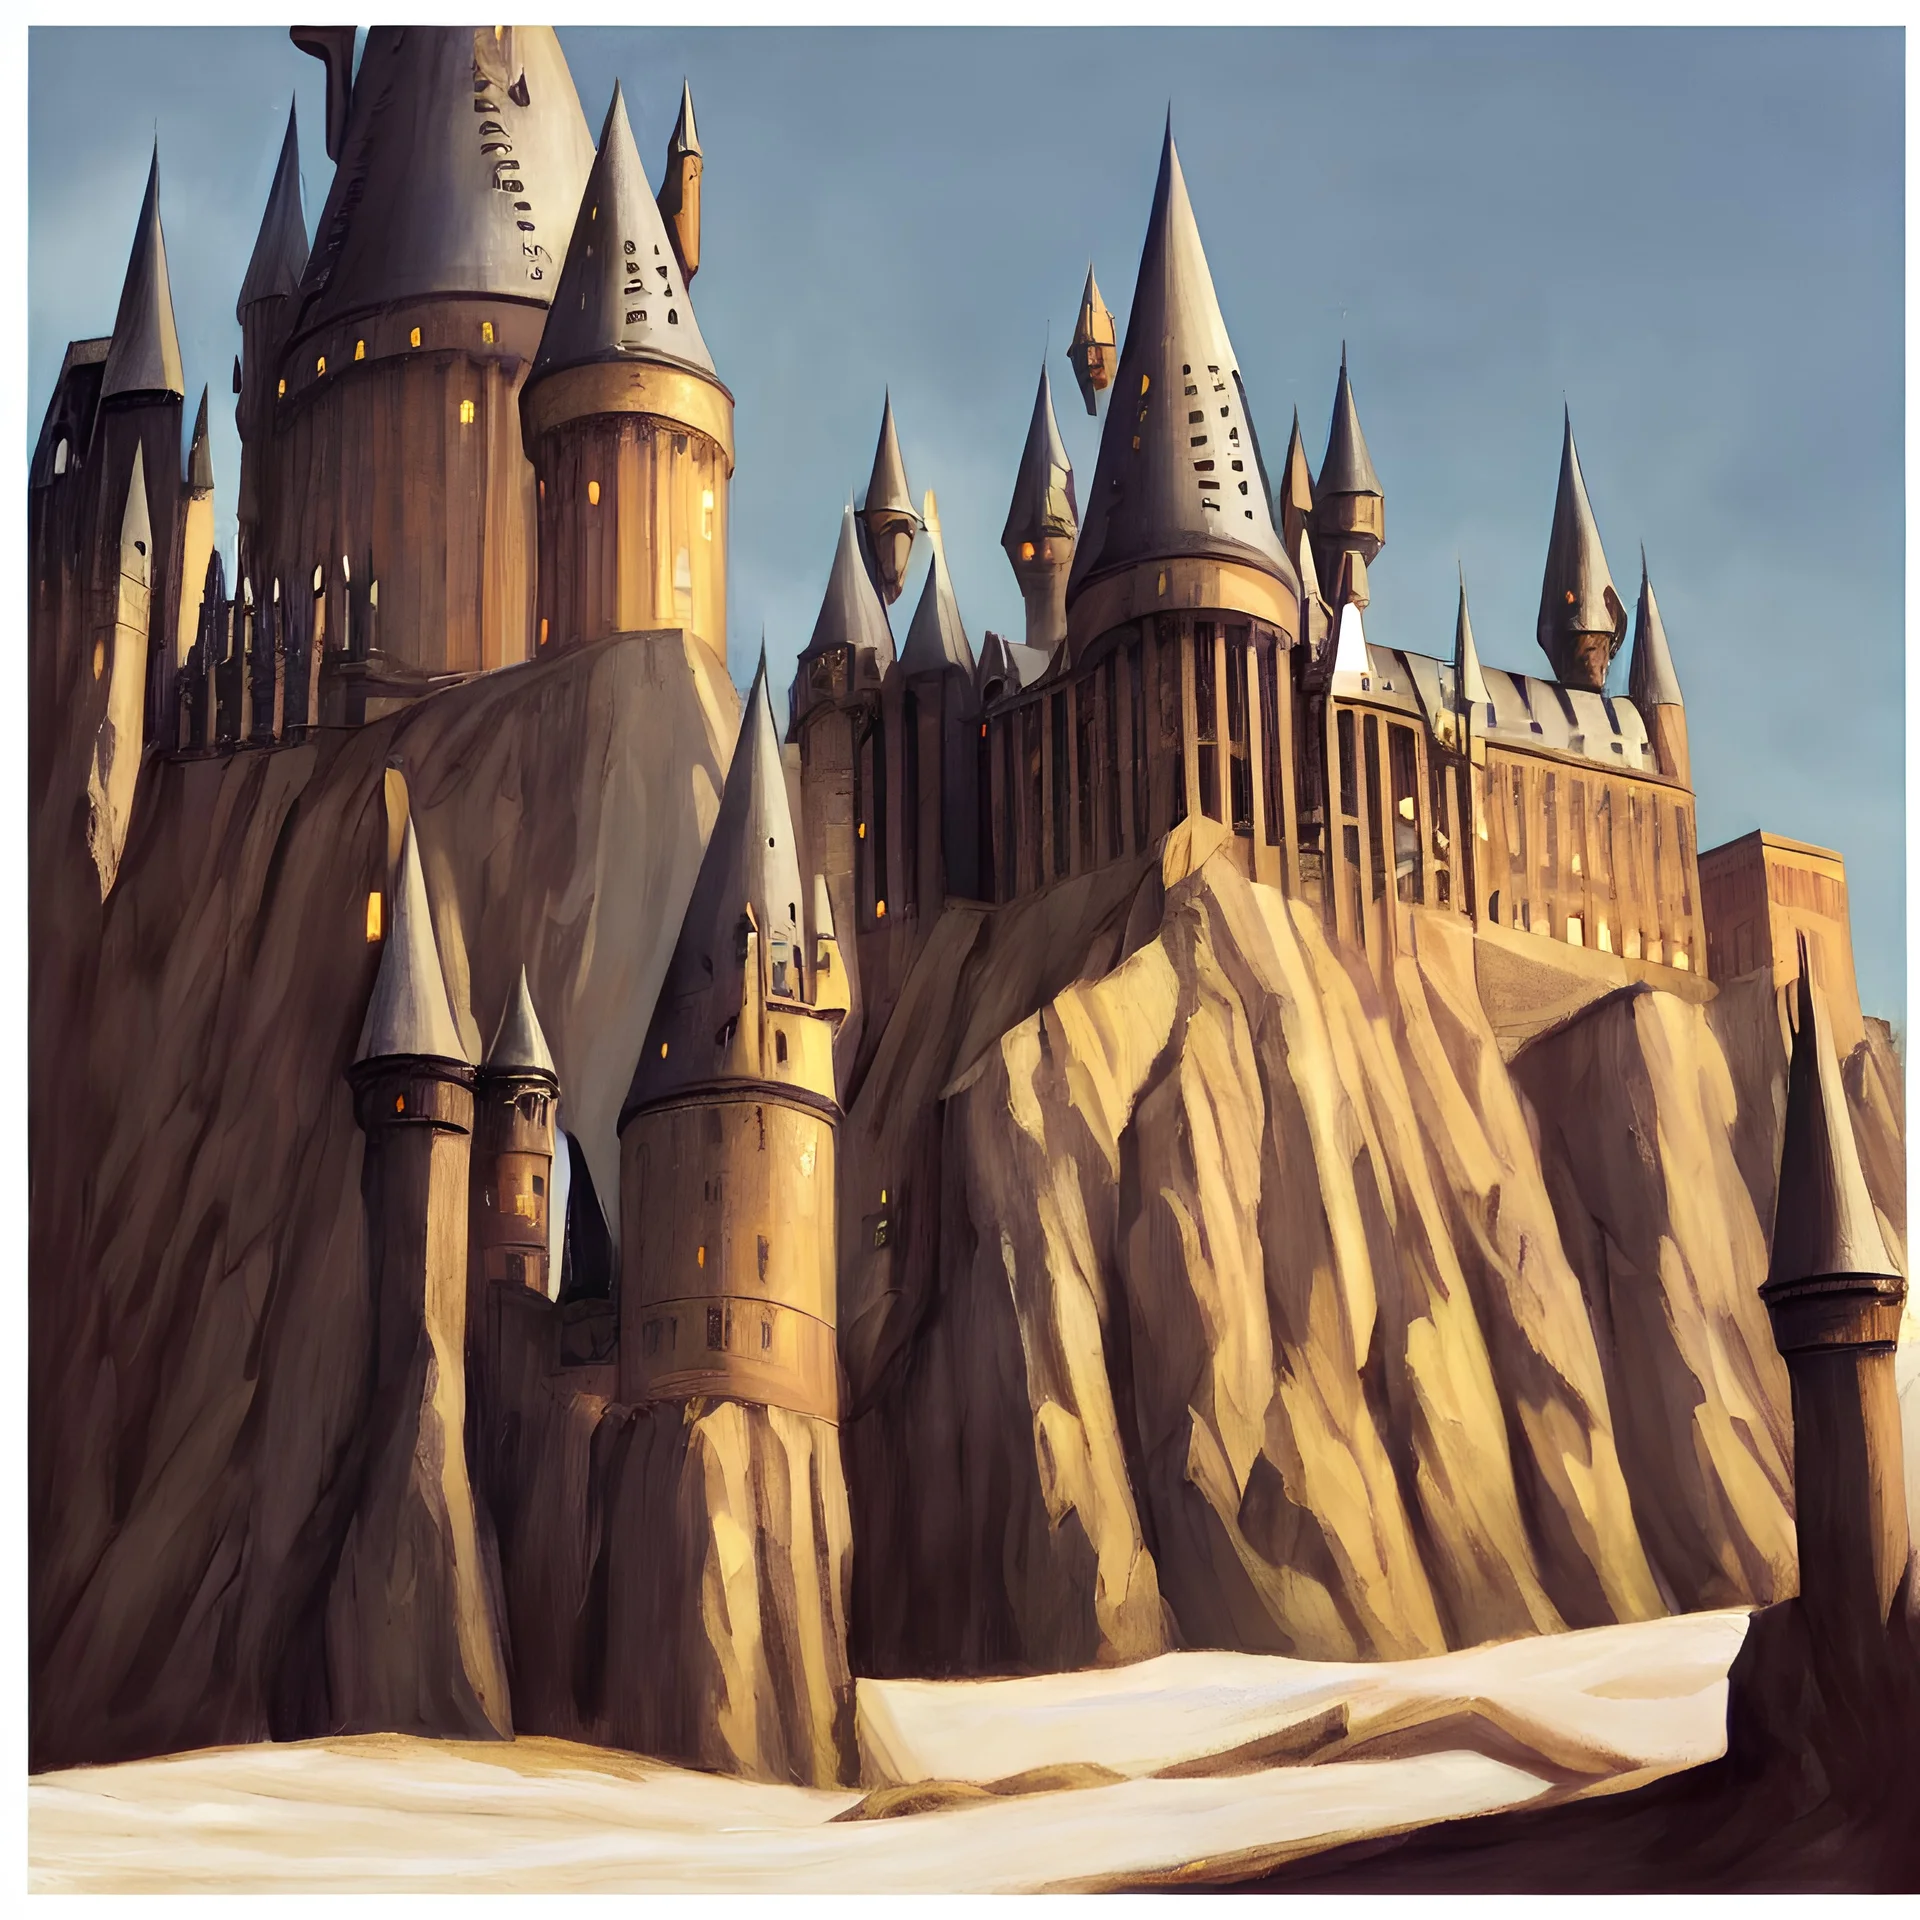 hogwarts castle, edward hopper style